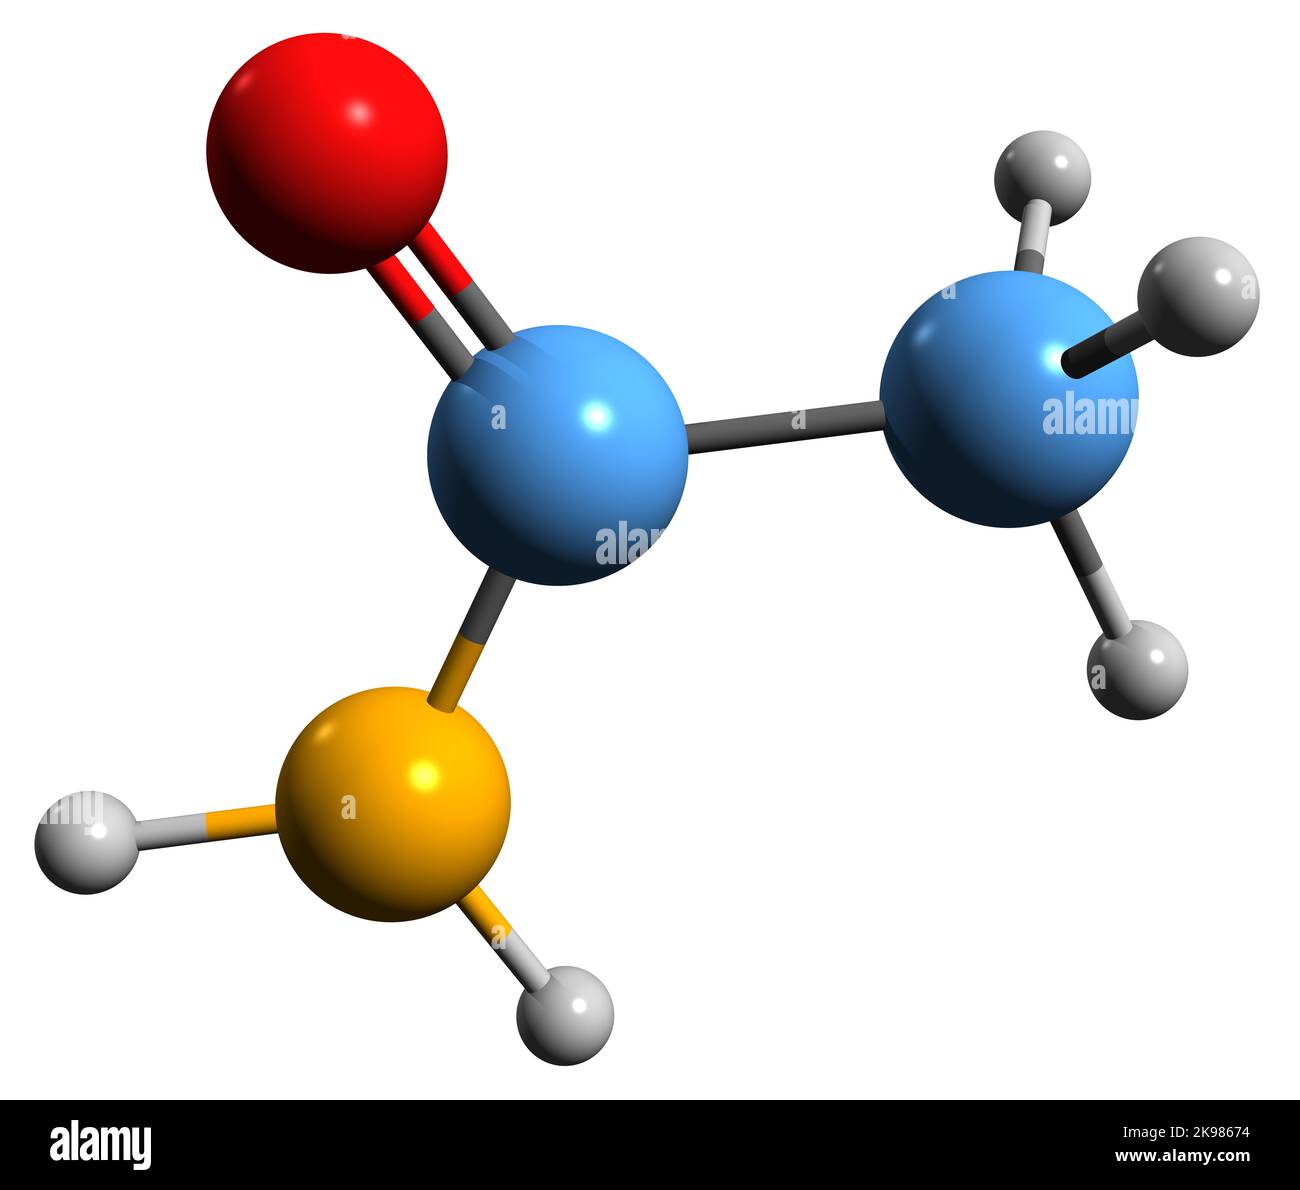 3D Abbildung der Skelettformel von Acetamid - molekularchemische Struktur von Essigsäureamid auf weißem Hintergrund isoliert Stockfoto